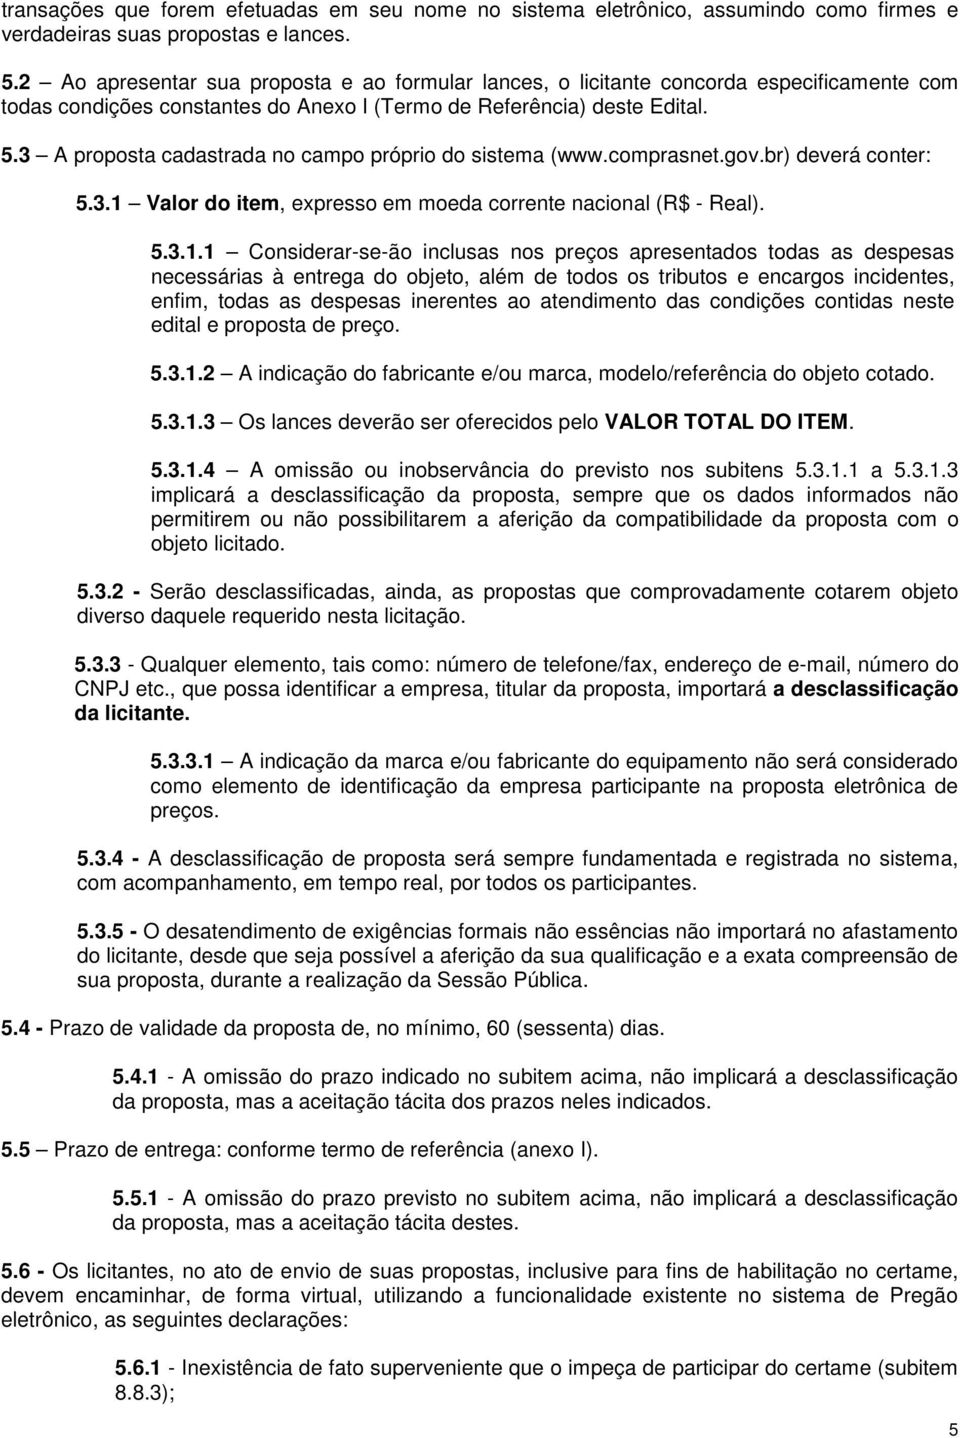 3 A proposta cadastrada no campo próprio do sistema (www.comprasnet.gov.br) deverá conter: 5.3.1 